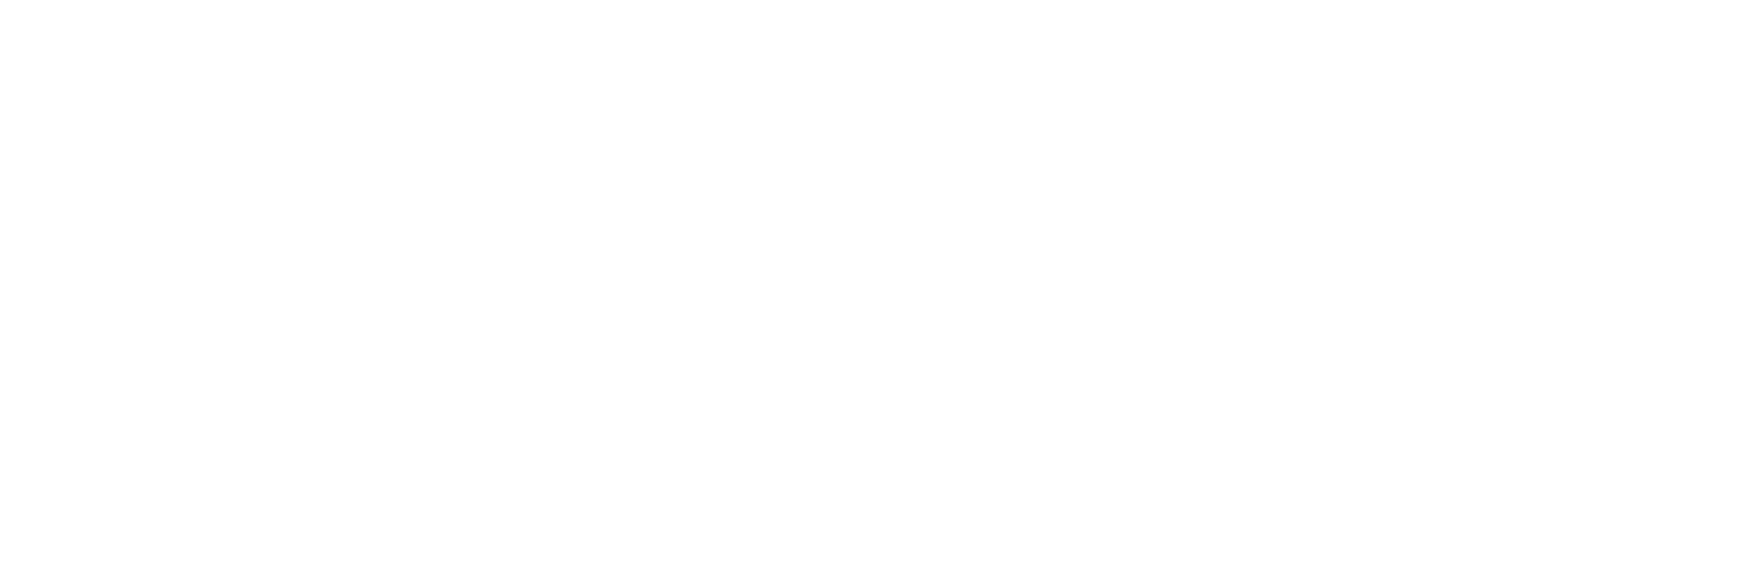 core 3 beauty logo